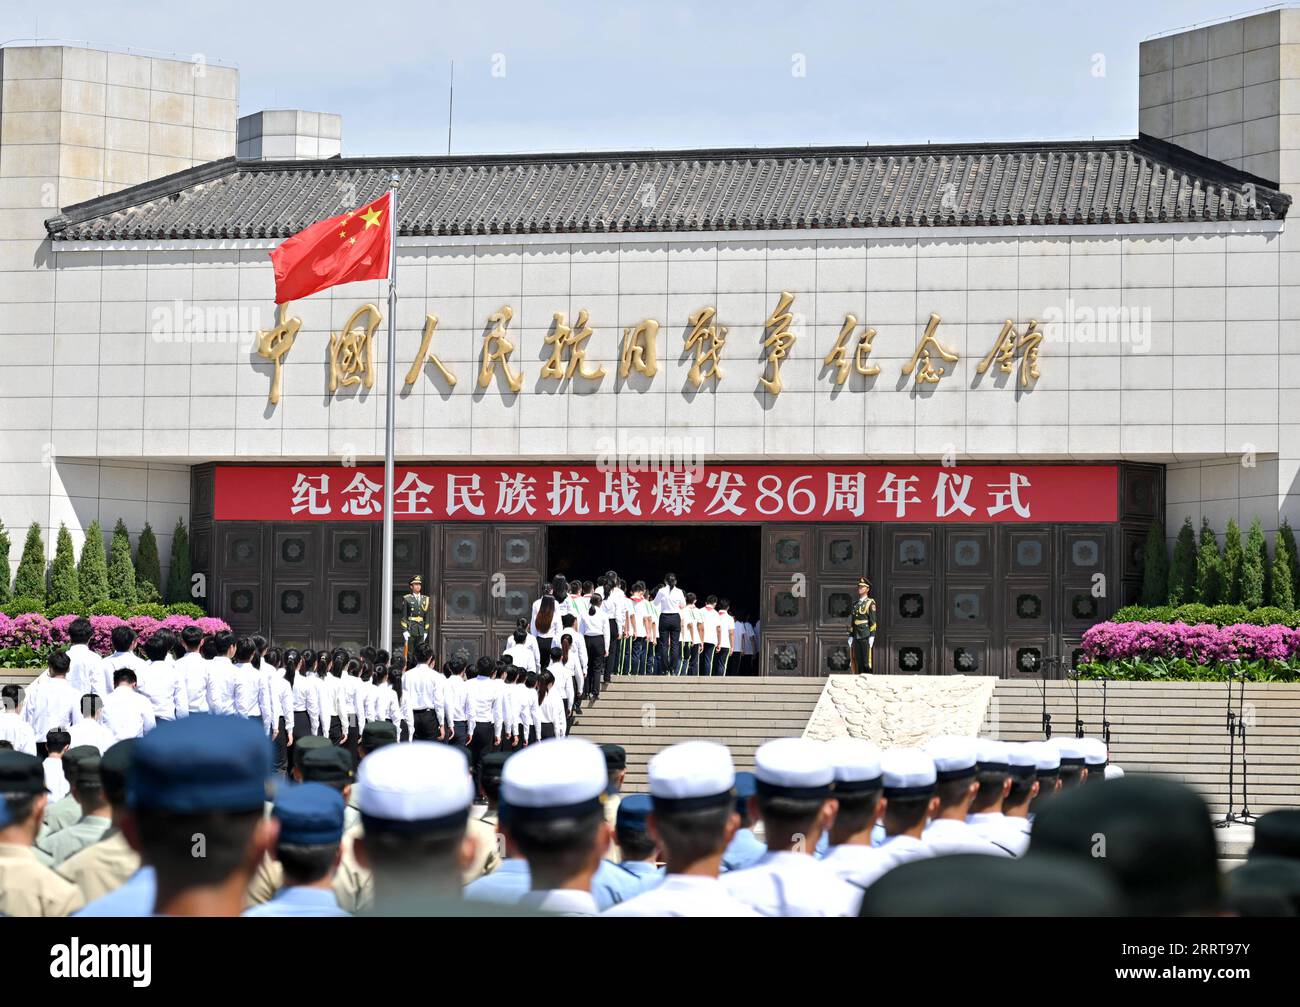 230707 -- PECHINO, 7 luglio 2023 -- la gente fa la fila per entrare nel Museo della Guerra della resistenza del popolo cinese contro l'aggressione giapponese a Pechino, capitale della Cina, 7 luglio 2023. Venerdì la Cina ha commemorato il 86° anniversario dell'inizio della guerra di resistenza dell'intera nazione cinese contro l'aggressione giapponese. Il 7 luglio 1937, i soldati giapponesi attaccarono le forze cinesi al ponte Lugou a Pechino. L'incidente è riconosciuto come l'inizio dell'invasione su larga scala del Giappone della Cina e della resistenza dell'intera nazione cinese contro gli invasori giapponesi. Una cerimonia commemorativa si è tenuta il venerdì Foto Stock